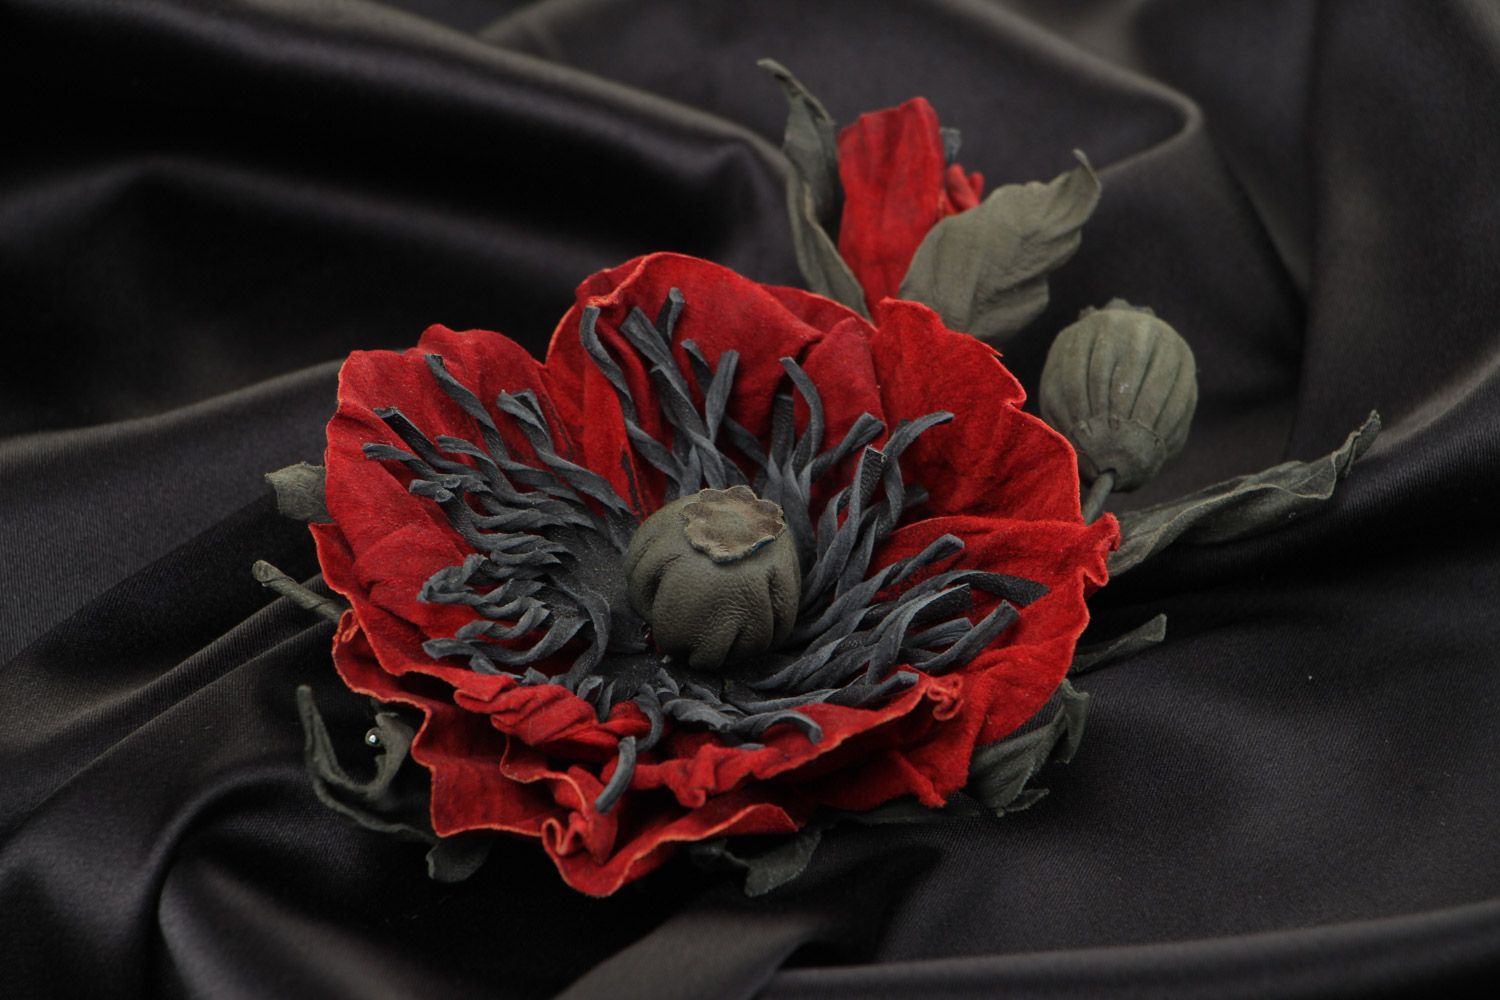 Брошь из кожи в виде цветка мака крупная красная красивая модная ручной работы фото 1